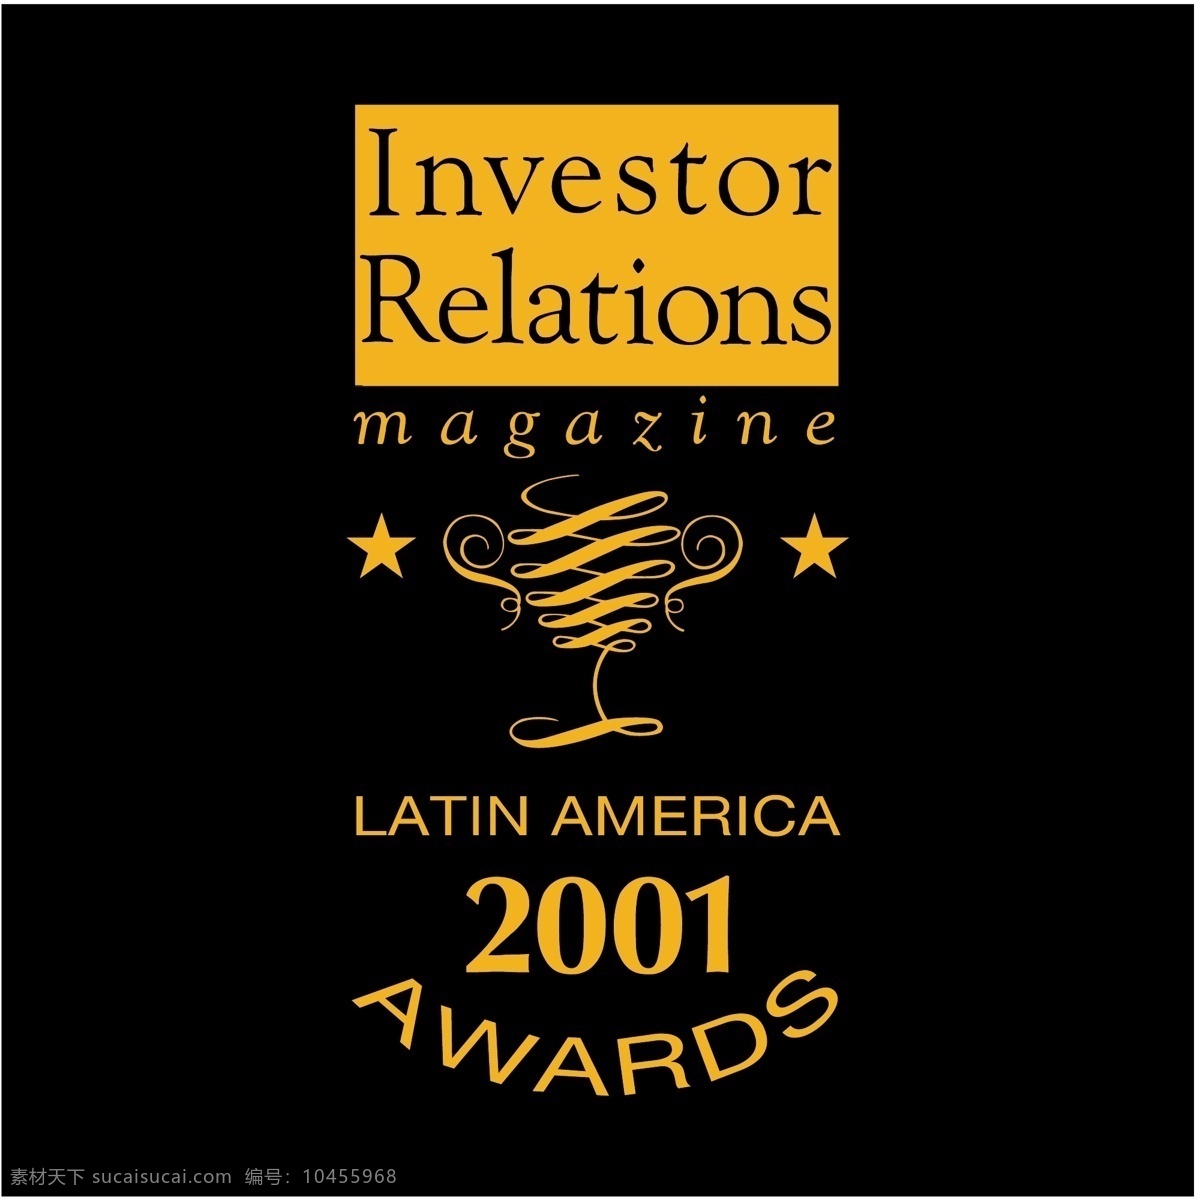 拉丁美洲 美国 2001 奖项 矢量标志下载 免费矢量标识 商标 品牌标识 标识 矢量 免费 品牌 公司 灰色